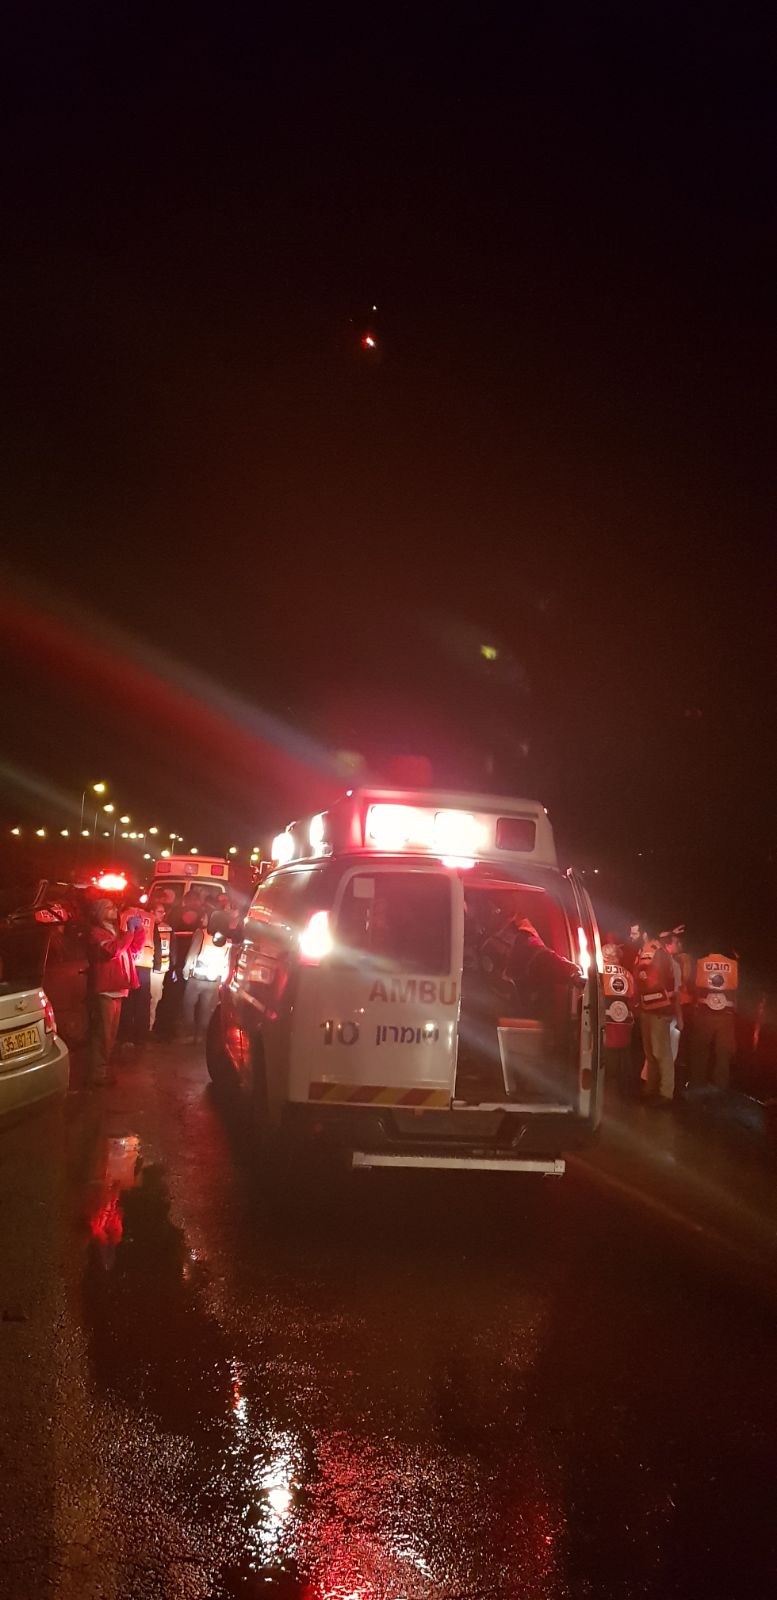 תאונת הדרכים הקטלנית בשומרון, 23 בינואר 2018 (צילום: דוברות המשטרה)